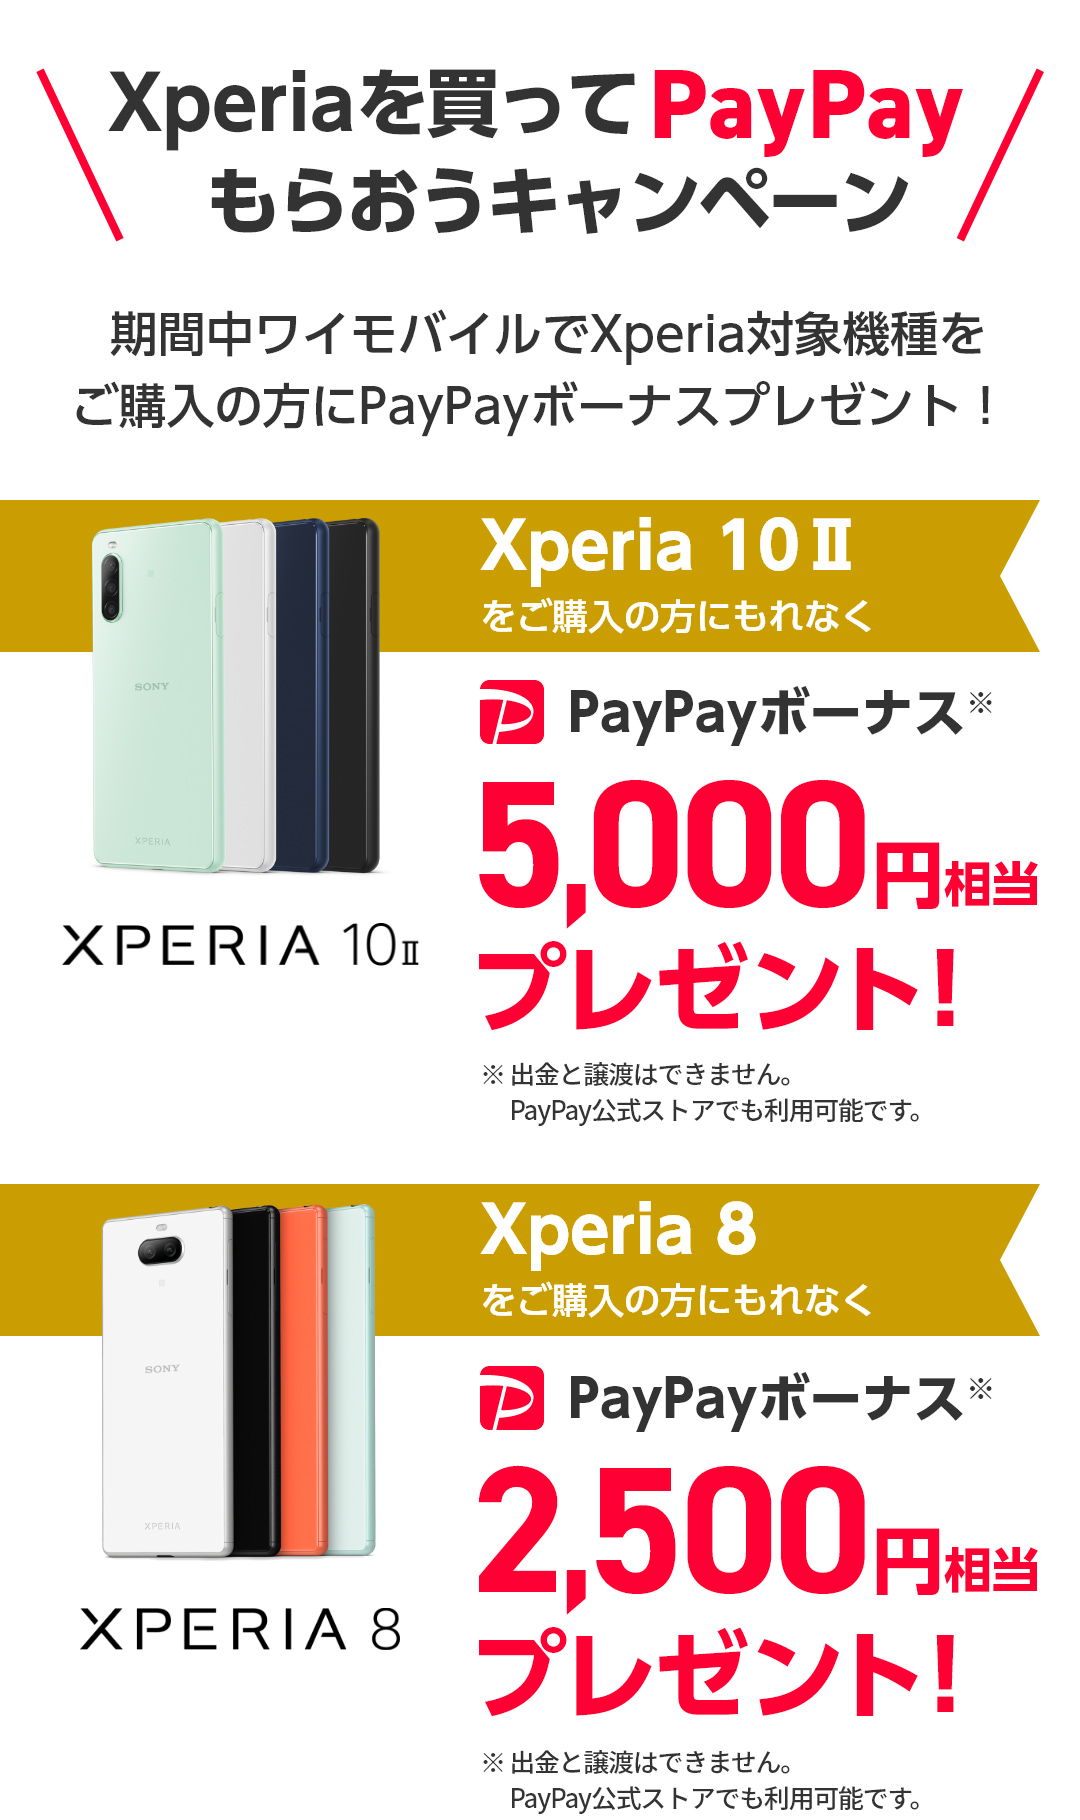 期間中ワイモバイルでXperia対象機種をご購入の方にPayPayボーナスプレゼント！Xperia 10 IIをご購入の方にもれなくPayPayボーナス5,000円相当プレゼント！Xperia 8をご購入の方にもれなくPayPayボーナス2,500円相当プレゼント！※出金と譲渡はできません。PayPay公式ストアでも利用可能です。